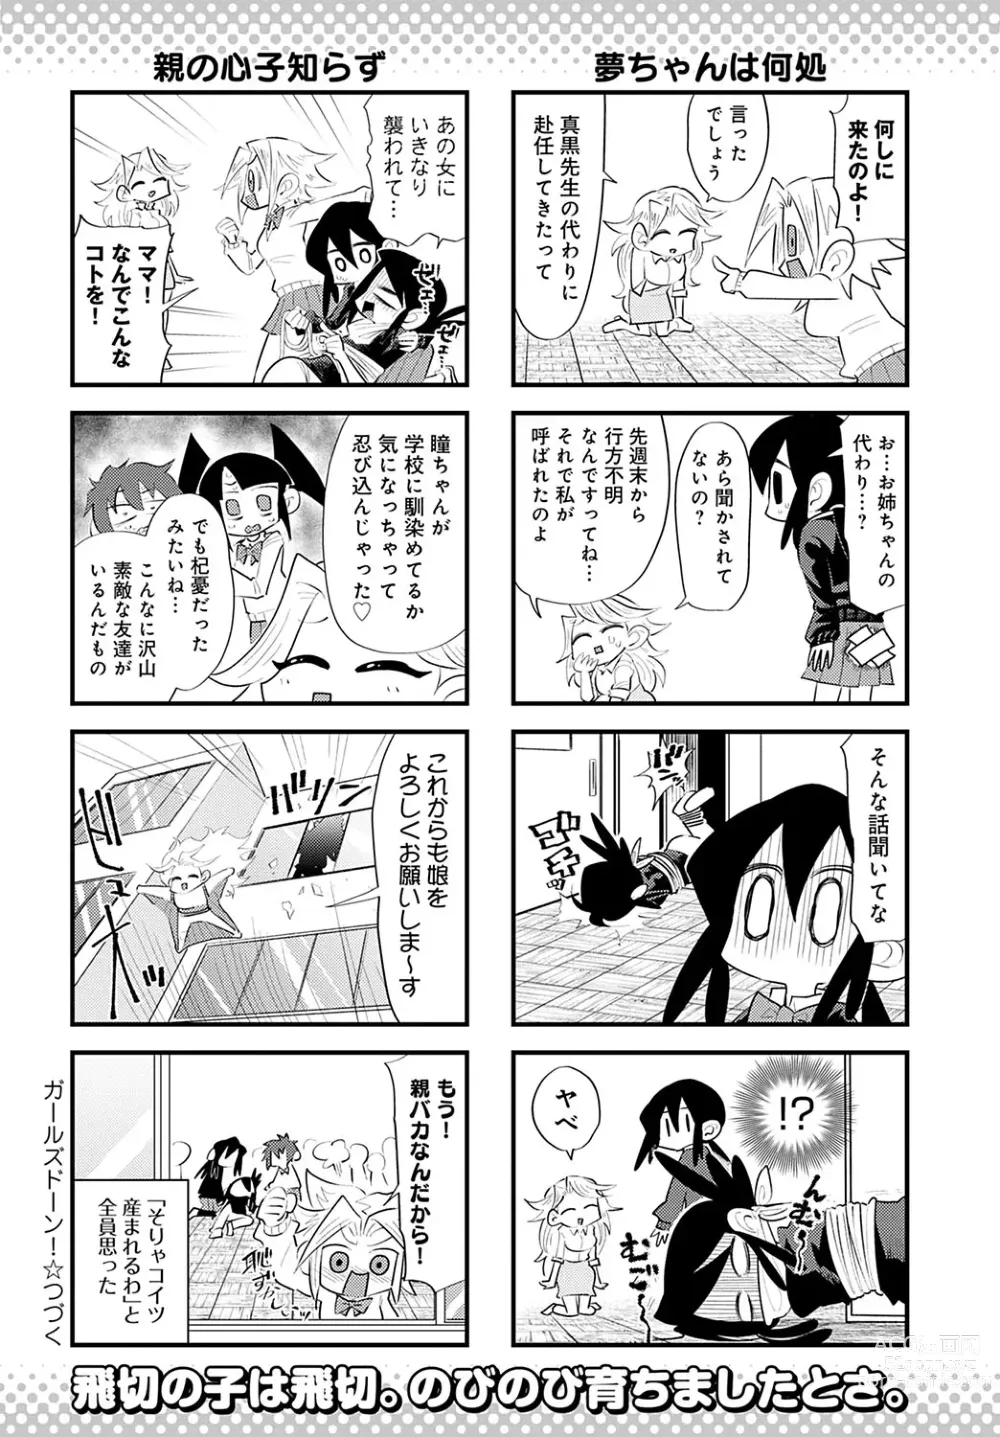 Page 451 of manga COMIC Anthurium 2022-08